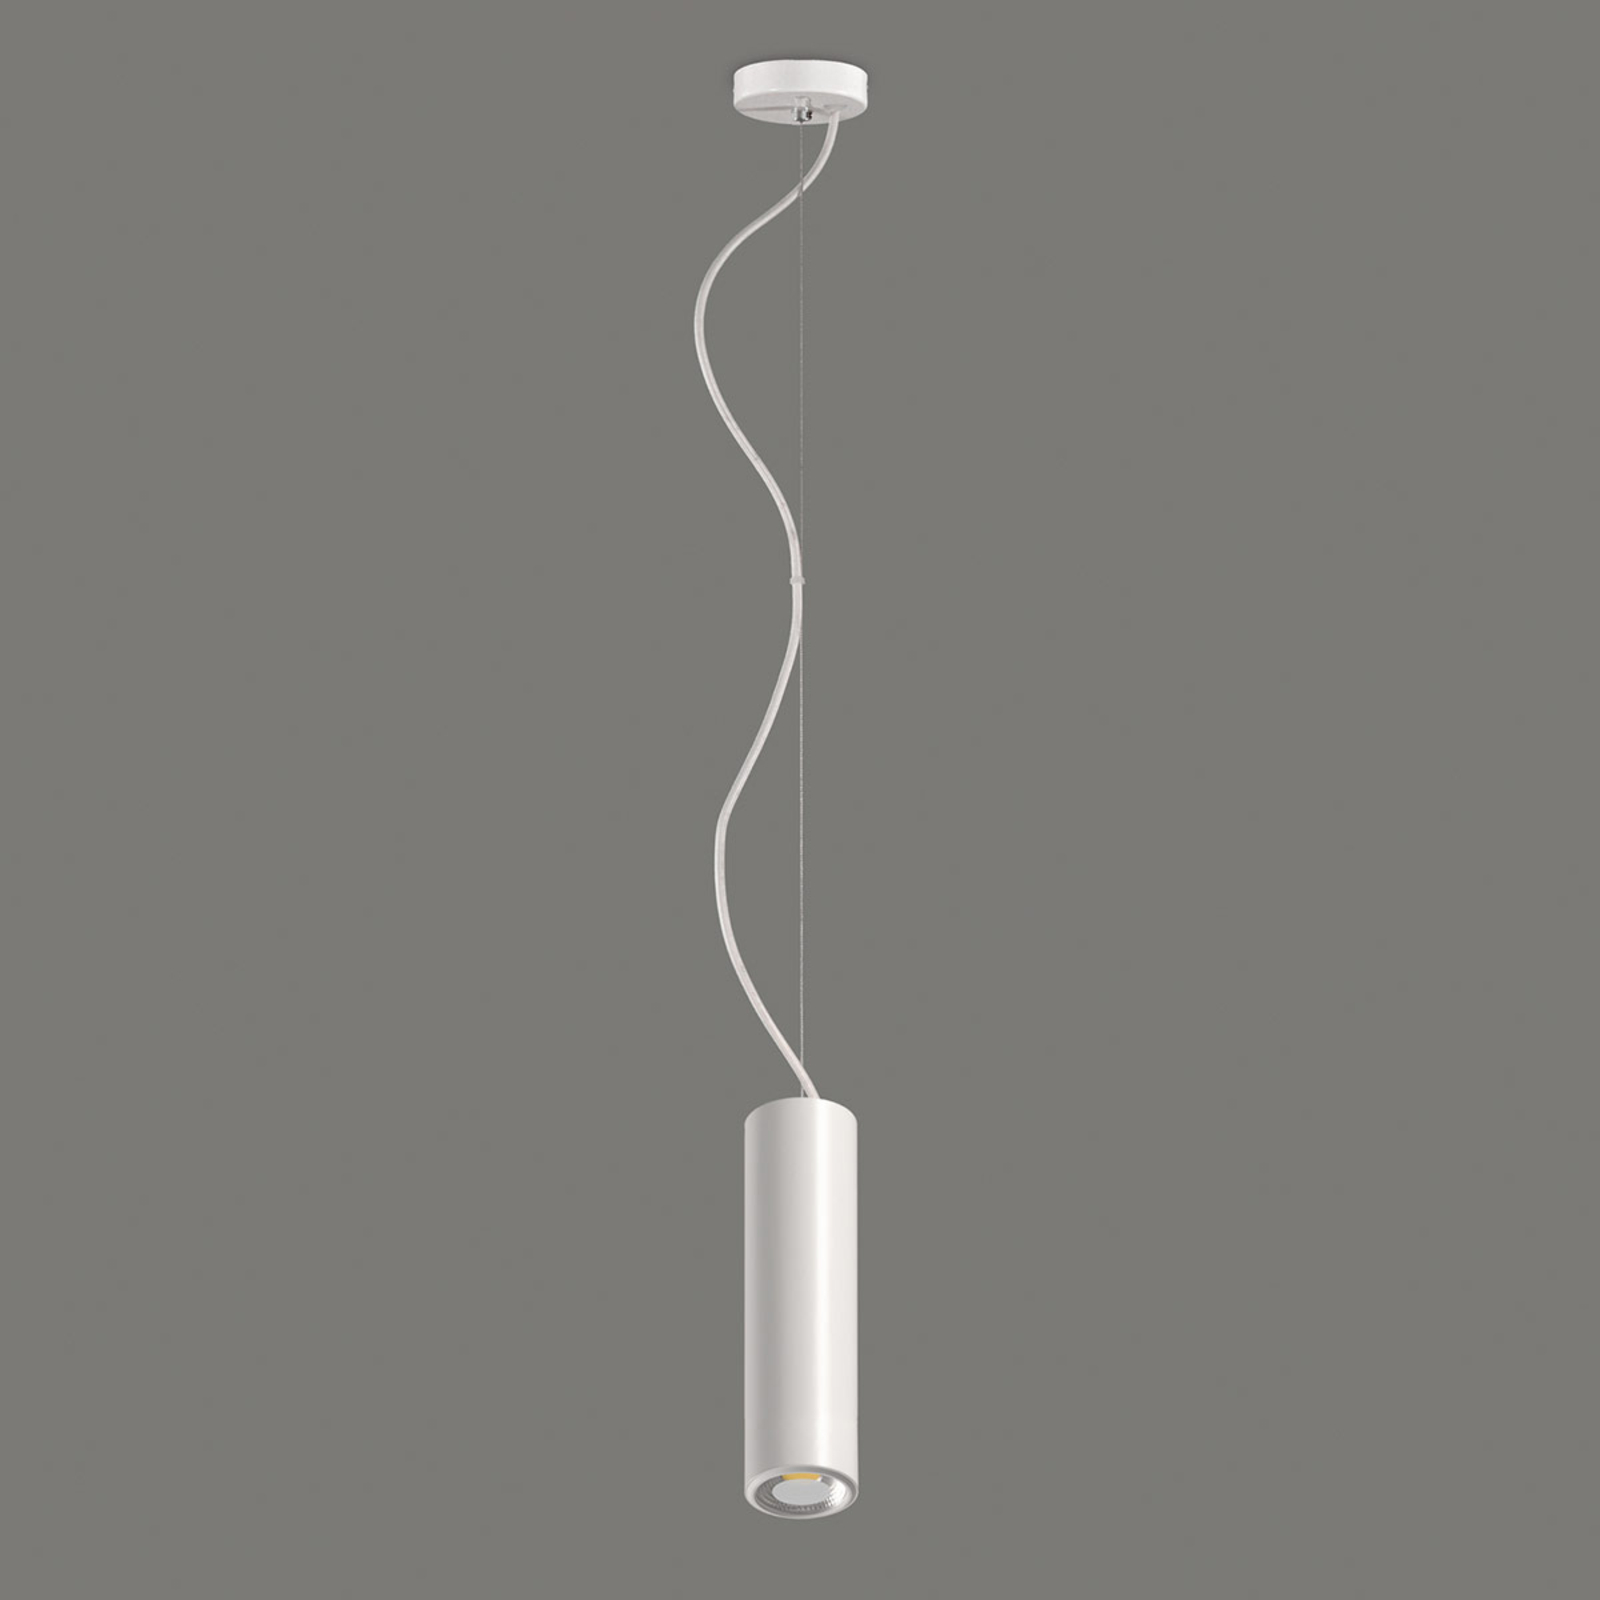 Studio - white LED pendant lamp, cylinder